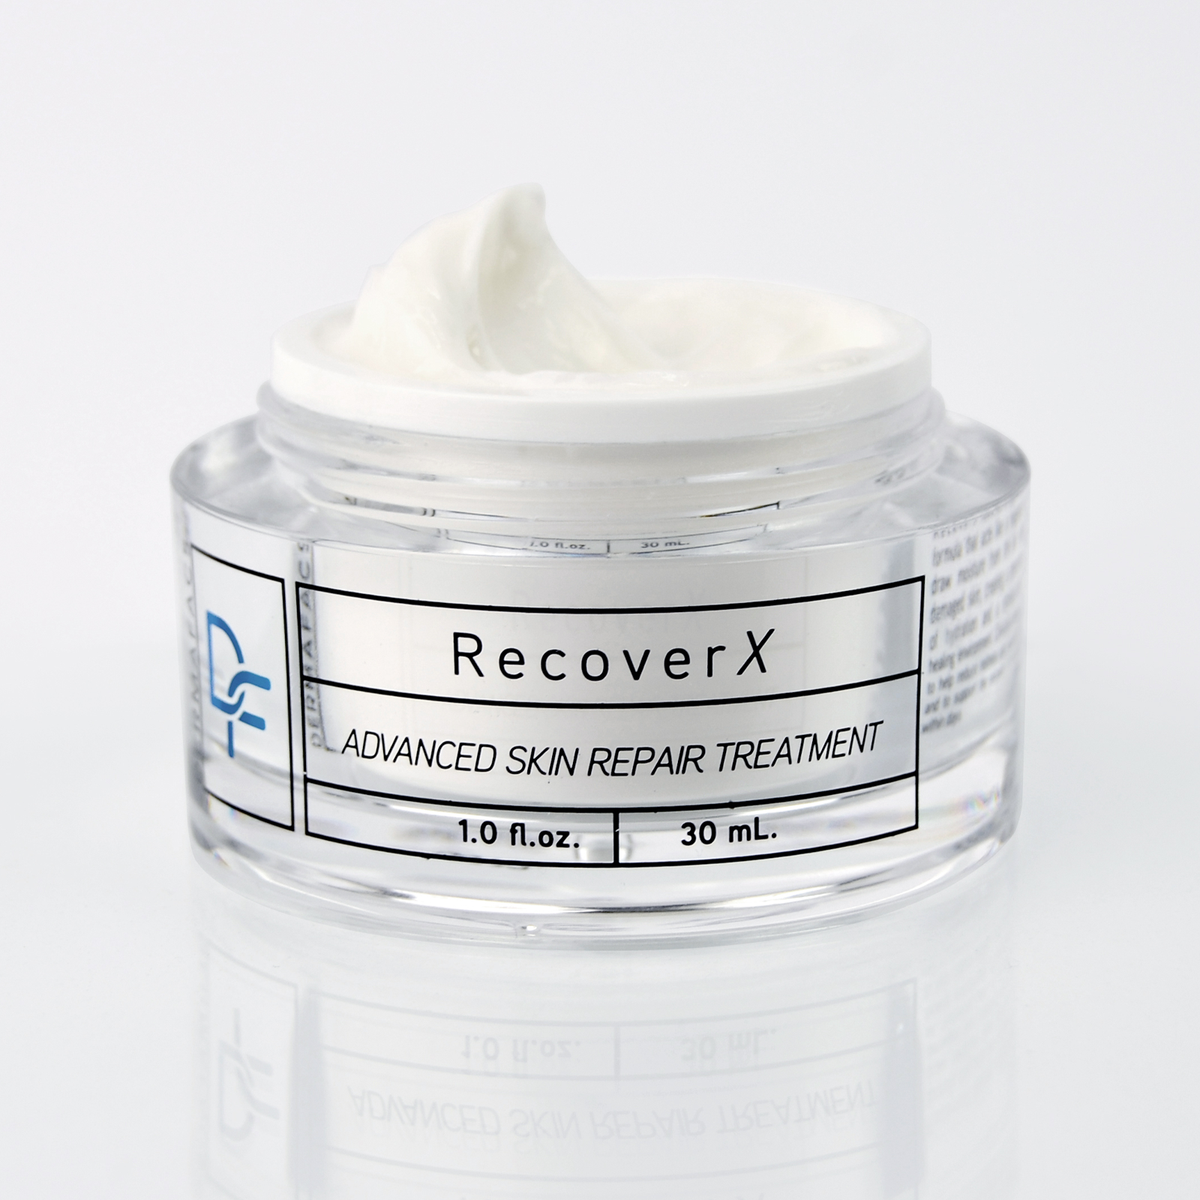 Advanced Skin Repair Treatment